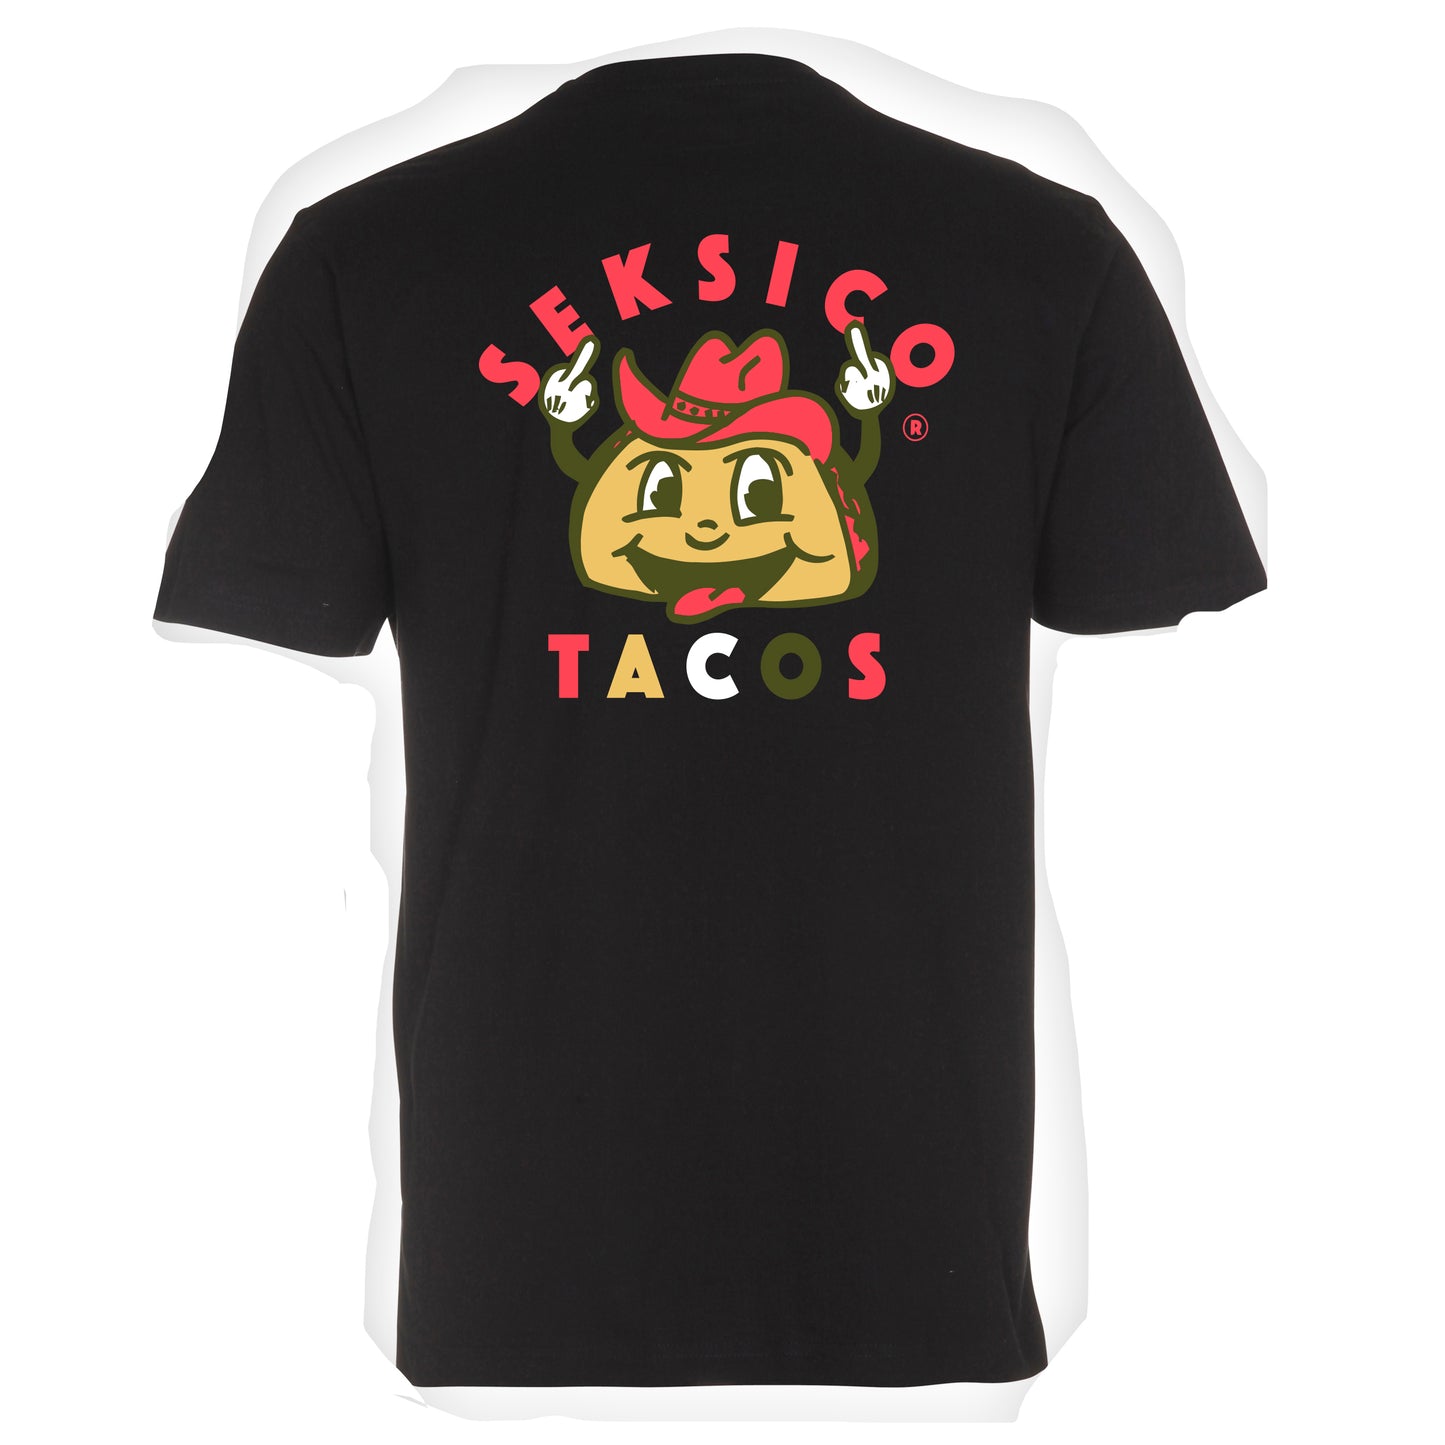 Seksico Tacos T-paita musta